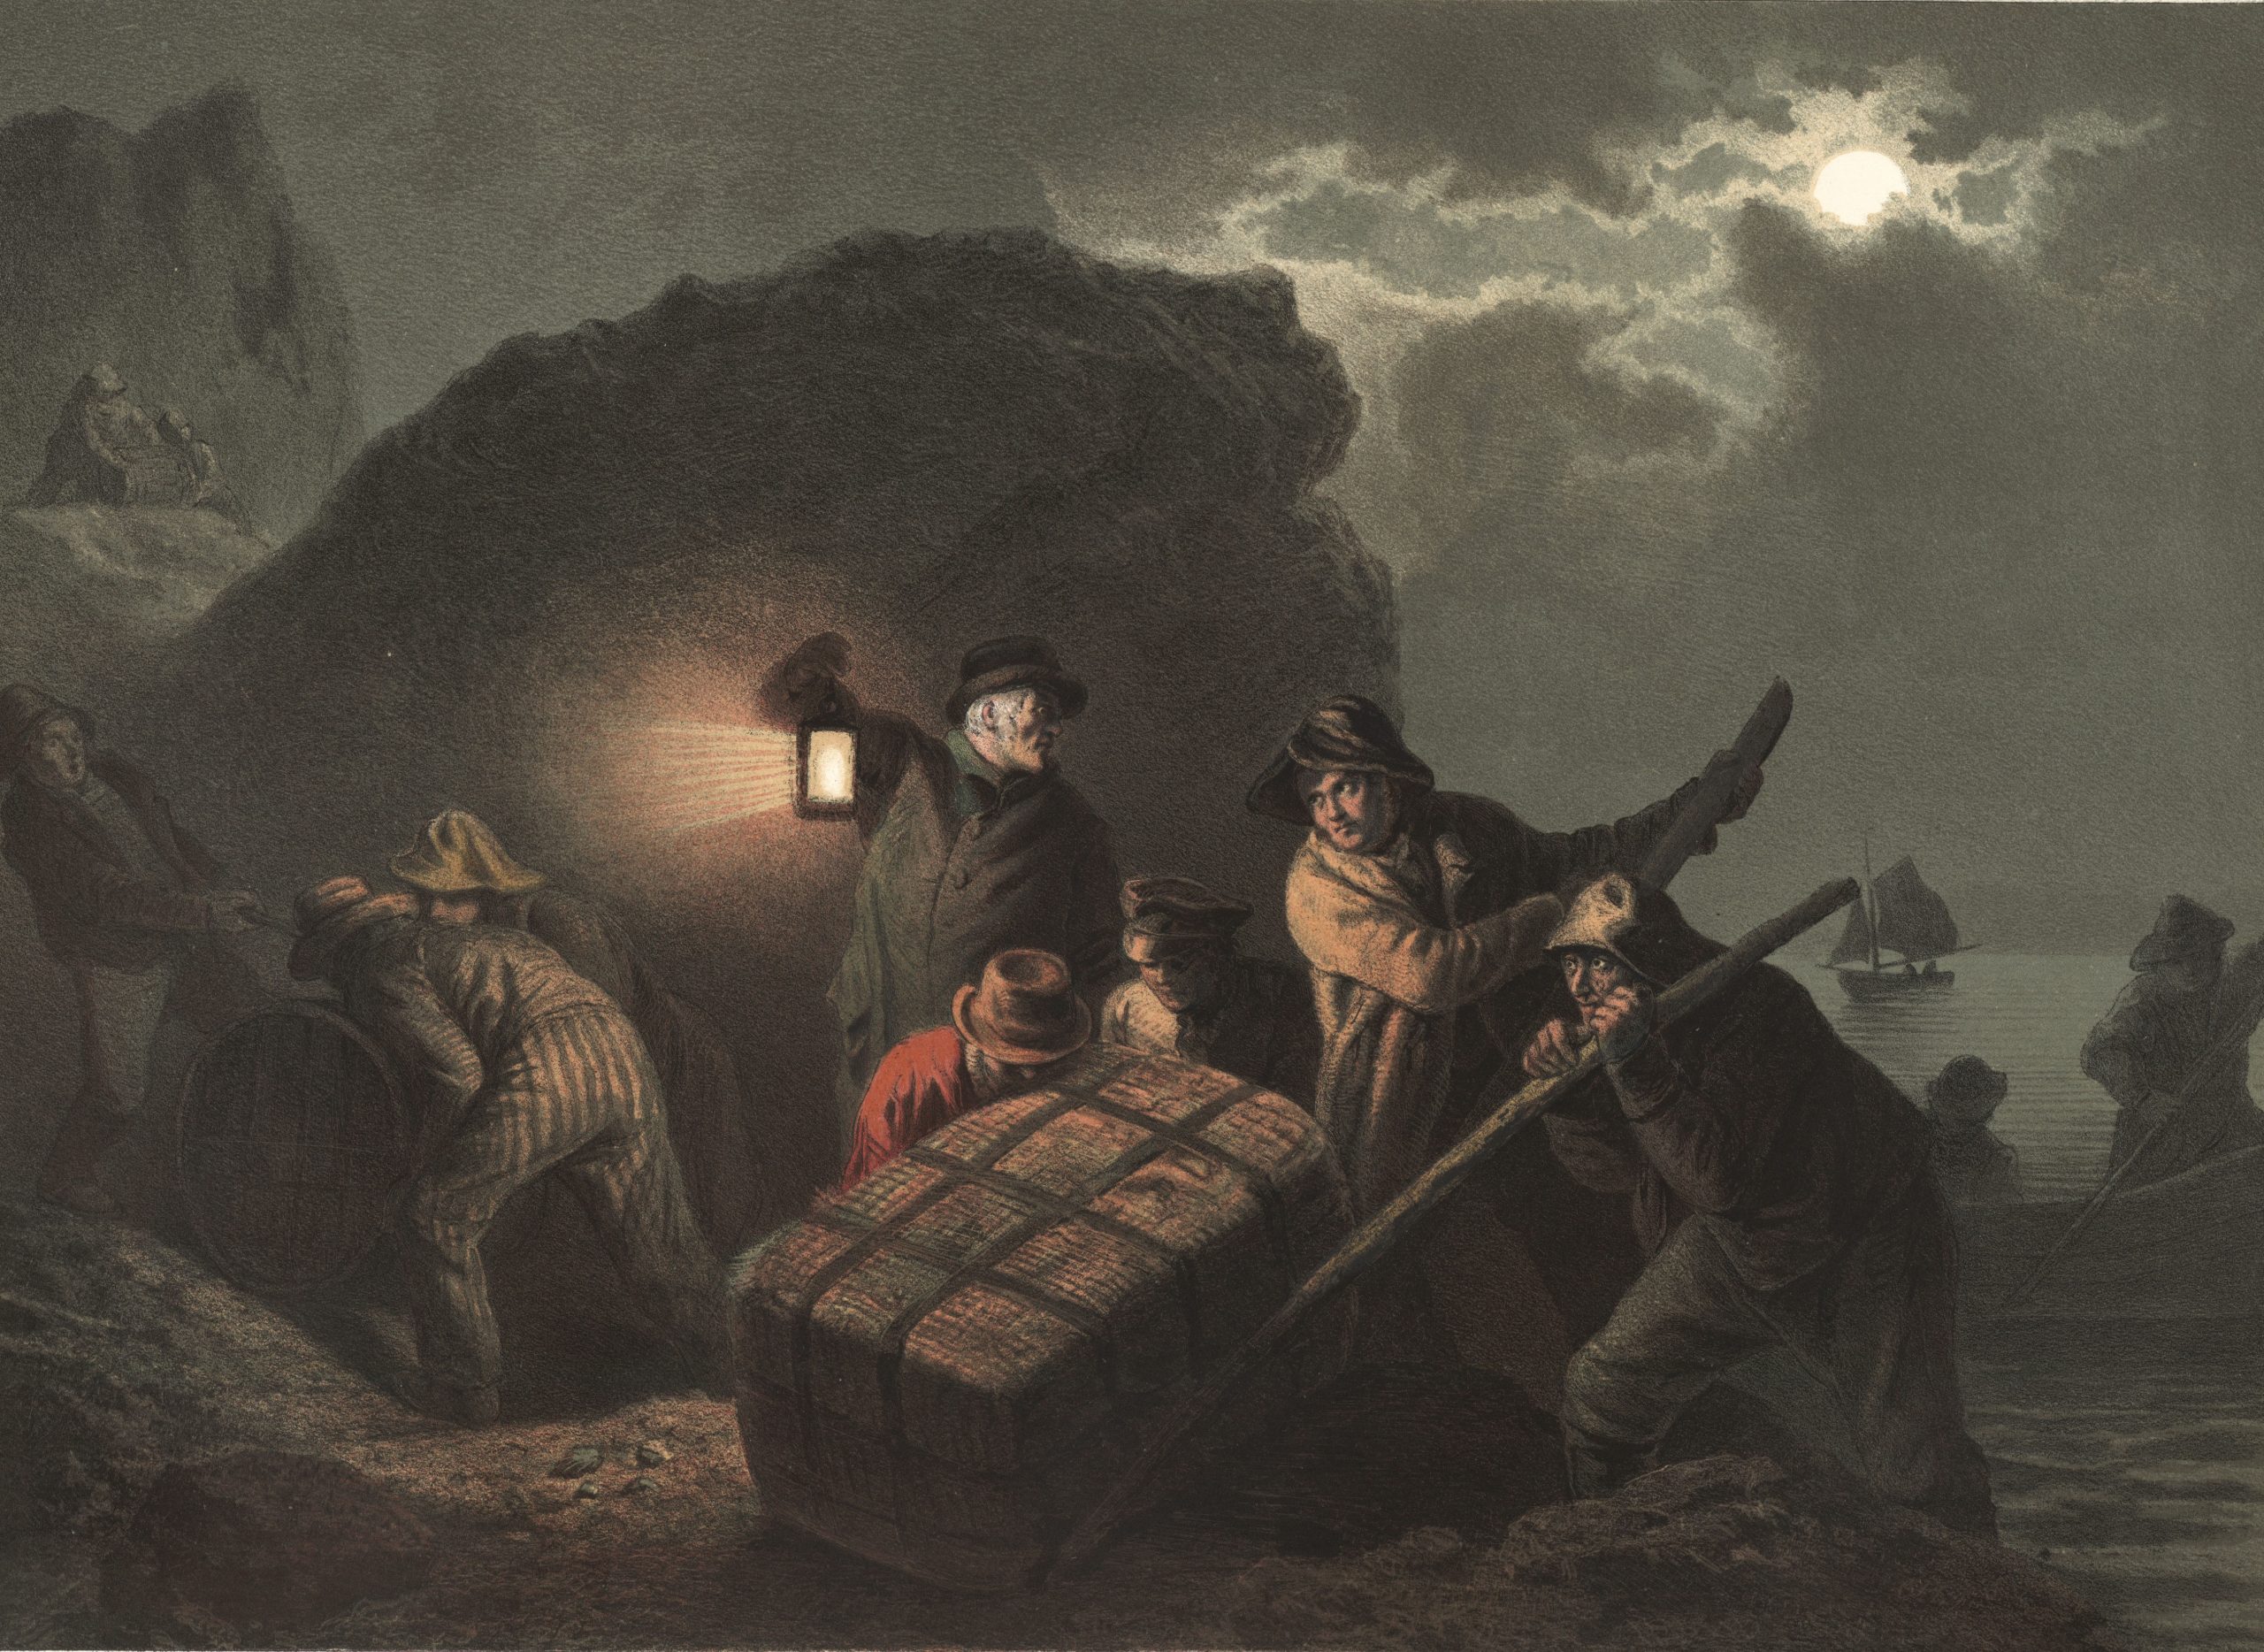 ålning. I ljuset av en lykta gömmer sex smugglare sitt smuggelgods i en klipphåla. På redden utanför väntar en båt i den mörka natten.